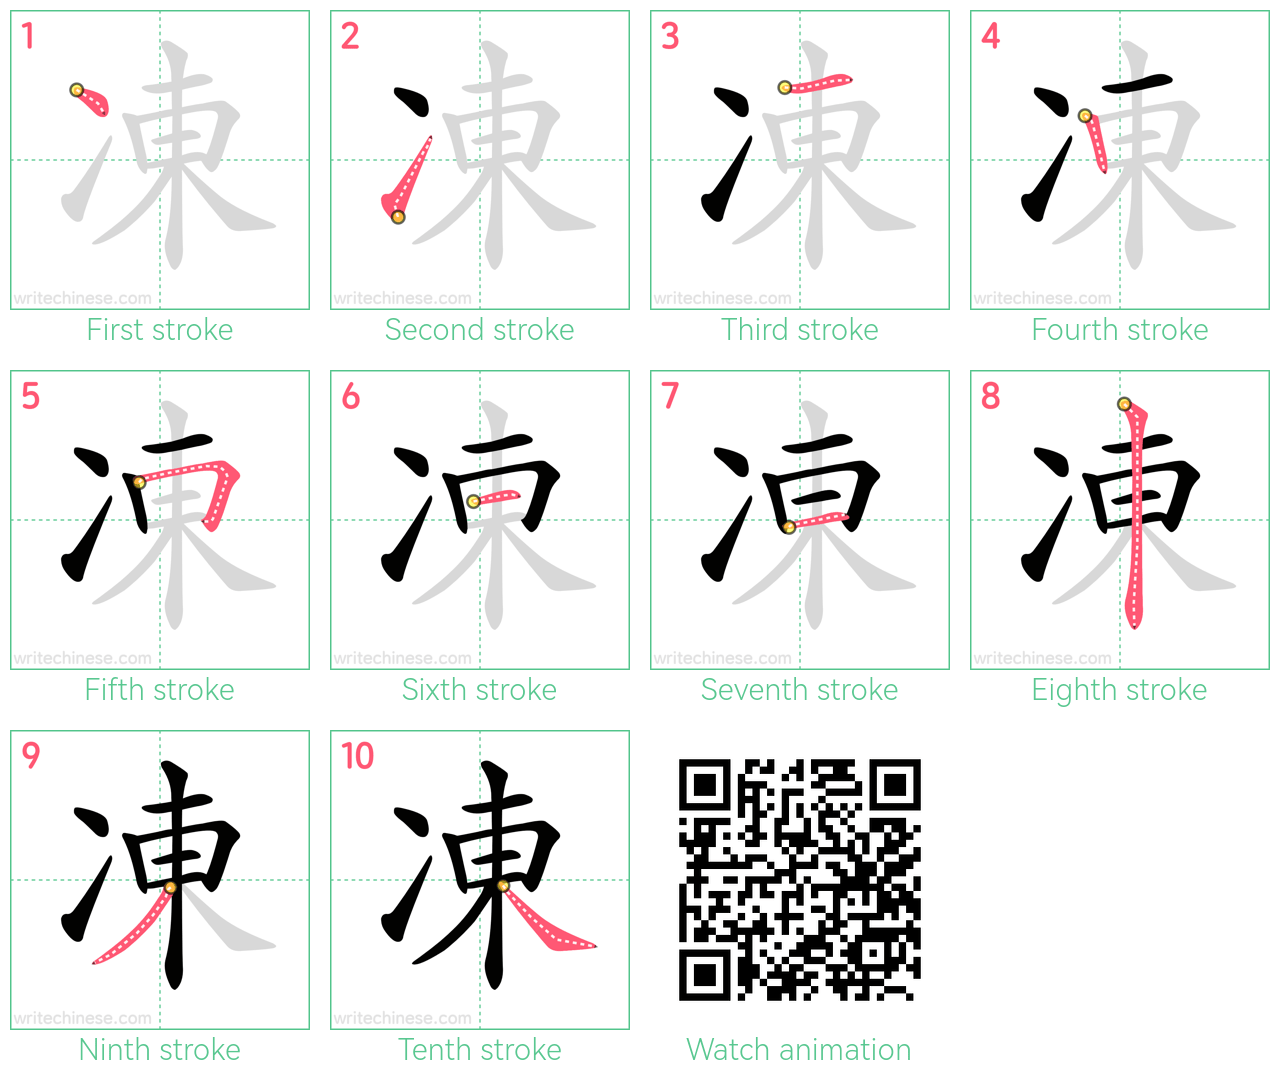 凍 step-by-step stroke order diagrams